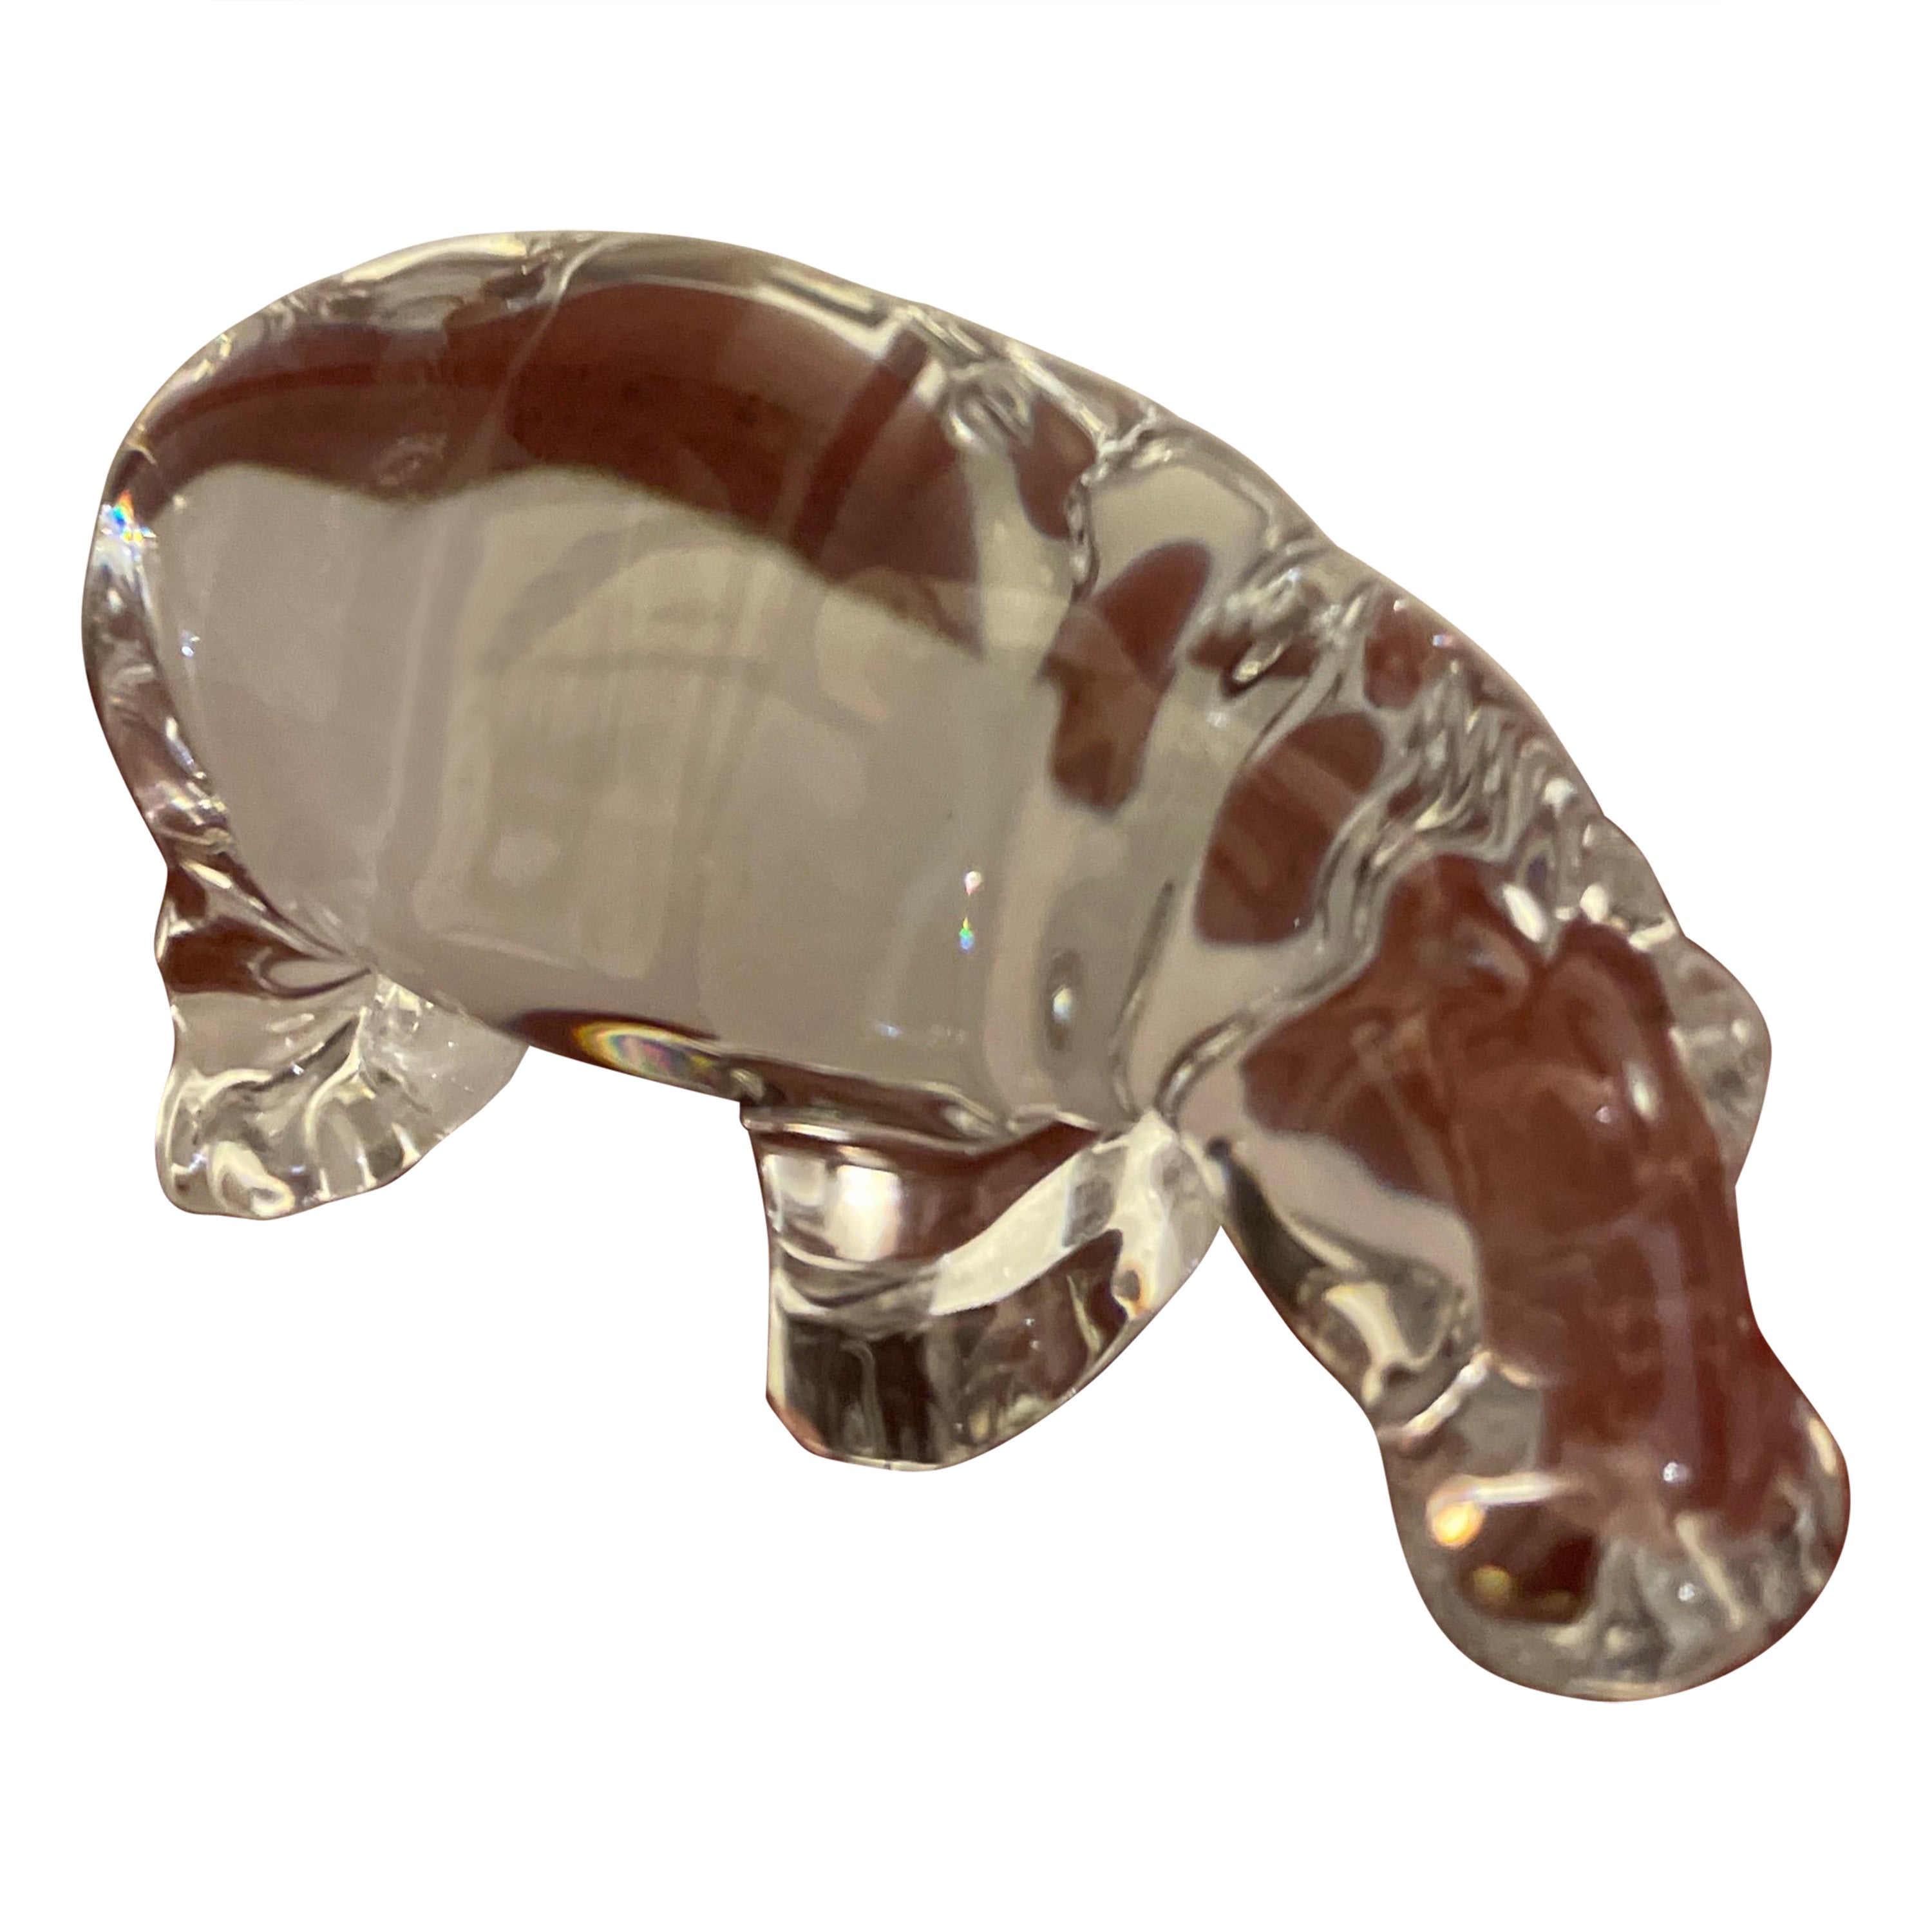 Figurita / Pisapapeles Hipopótamo de Cristal Baccarat